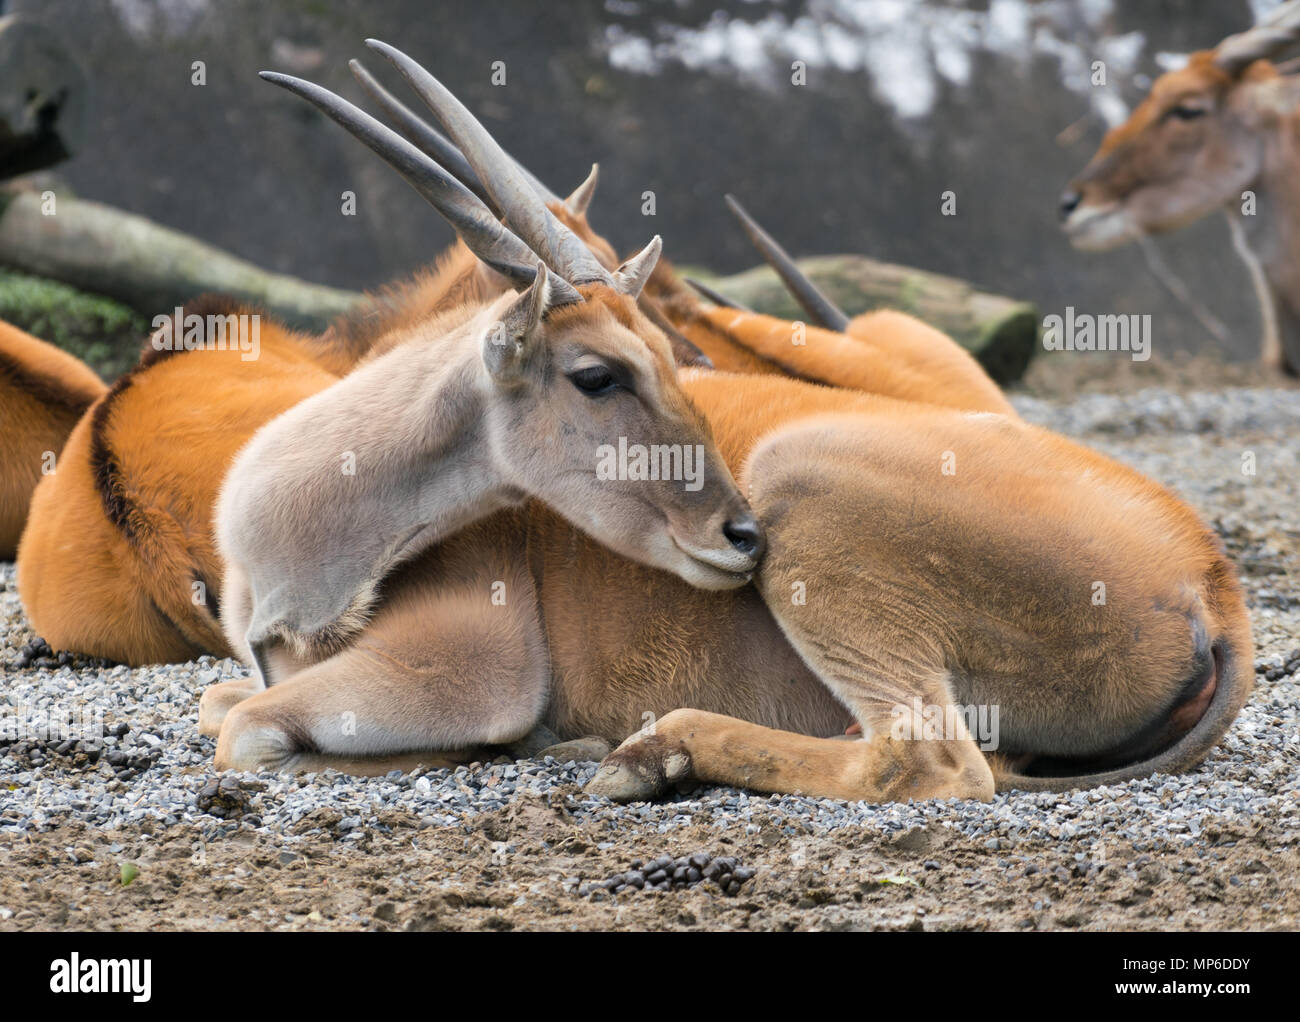 Afrikanische gemeinsamen südlichen eland Antilopen oder taurotragus Oryx Stockfoto